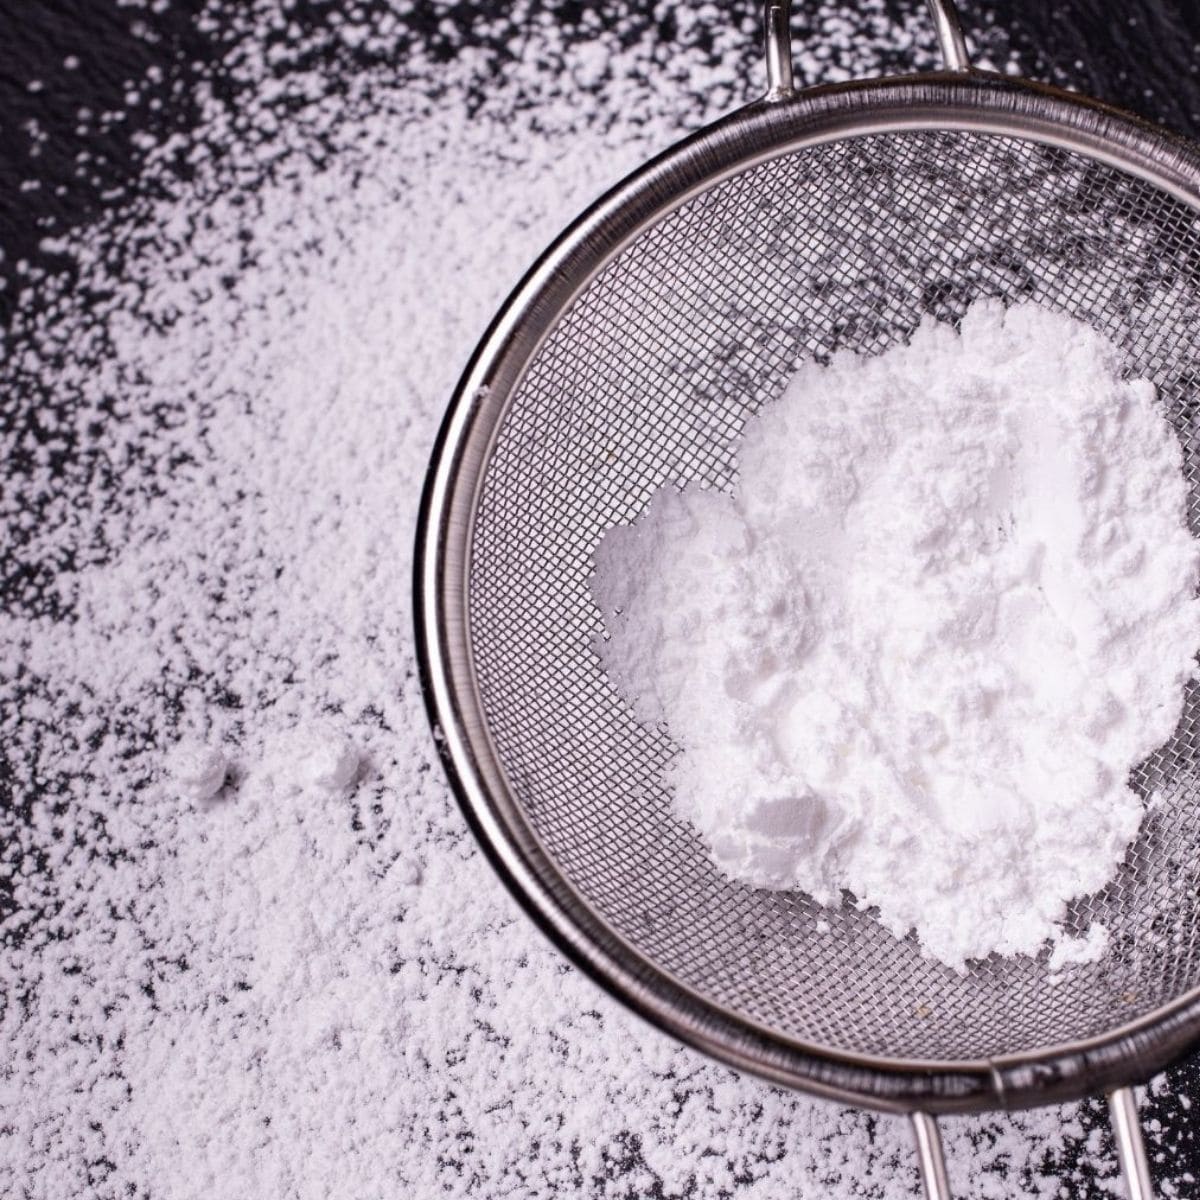 De bästa alternativen för pulveriserat socker att använda vid bakning.